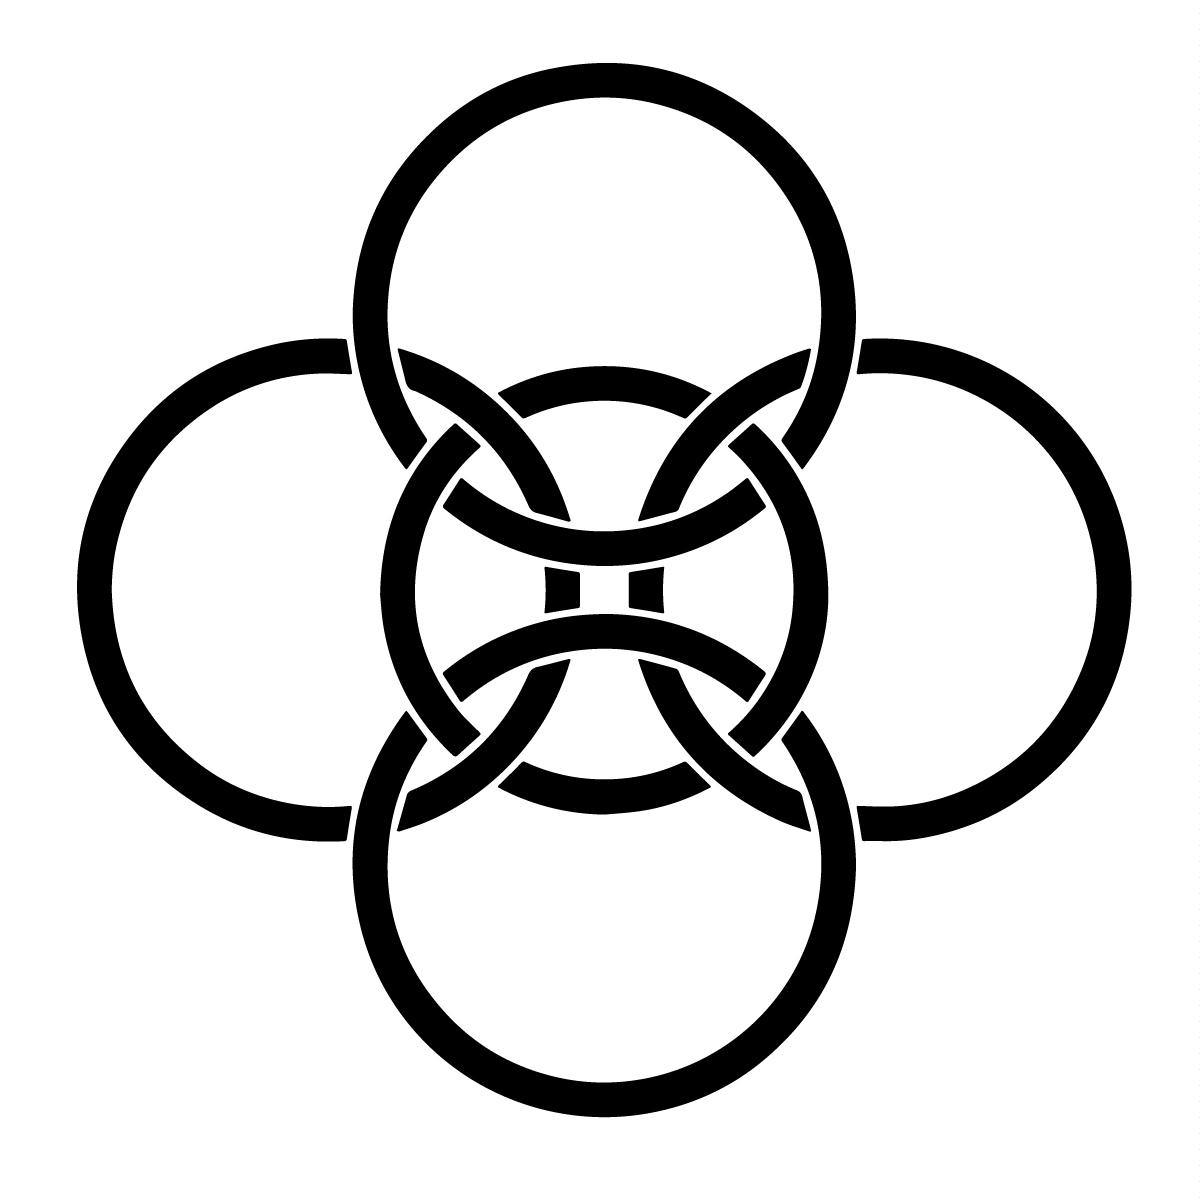 Simbol celtic al conexiunii a 5 cercuri - Ilustrație